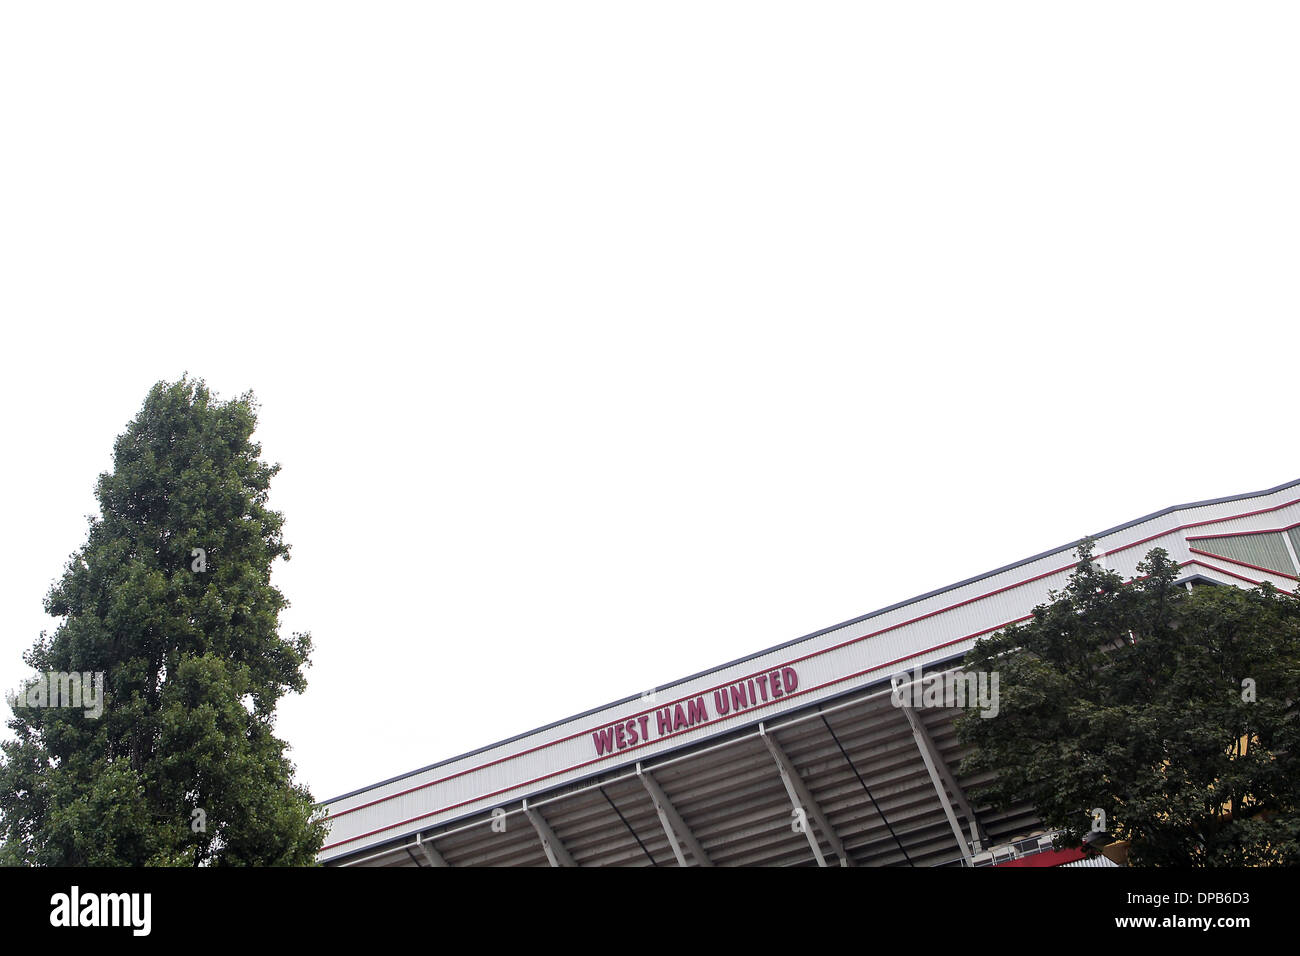 Boleyn Ground, Upton Park, London accueil de West Ham United Banque D'Images